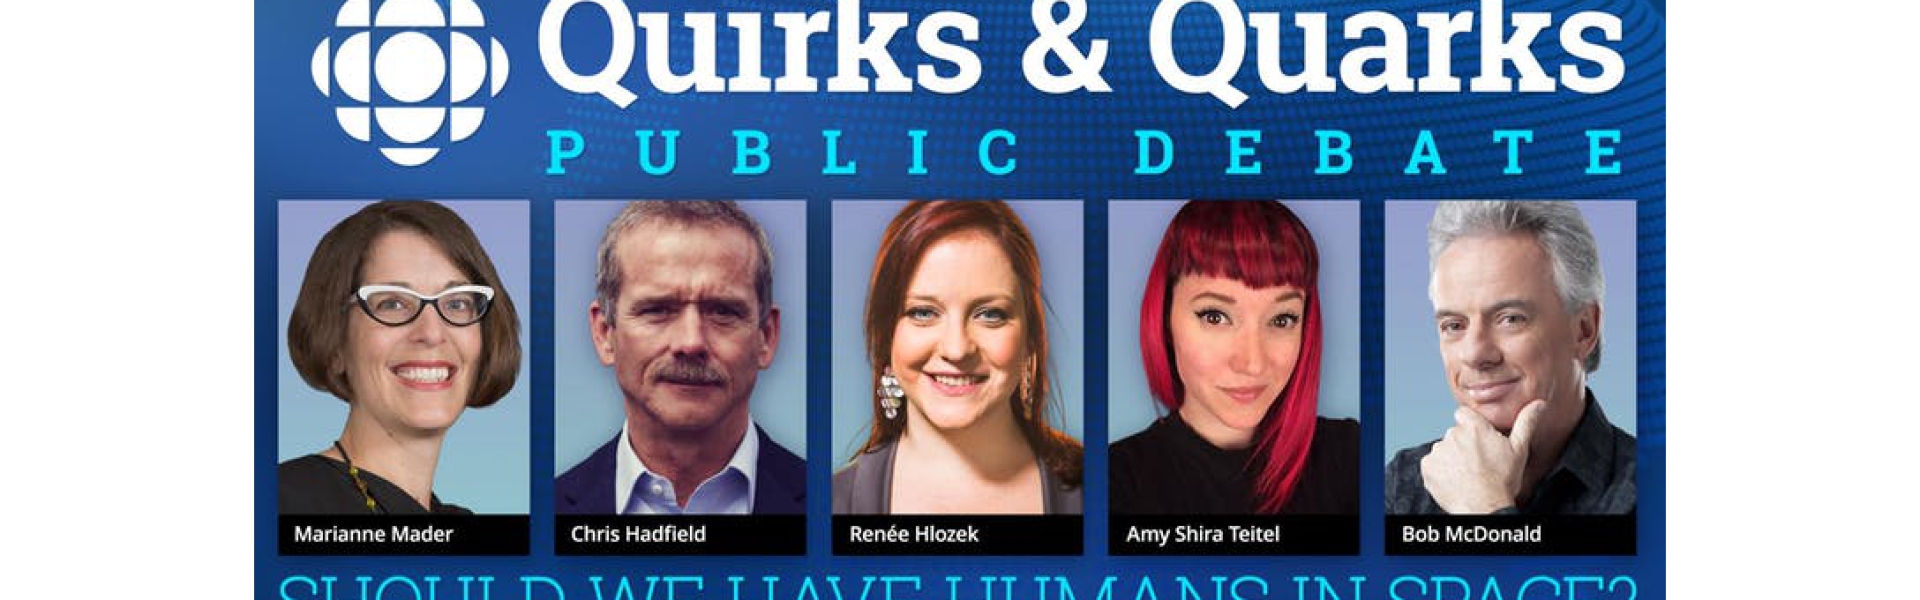 Quirks & Quarks Public Debate